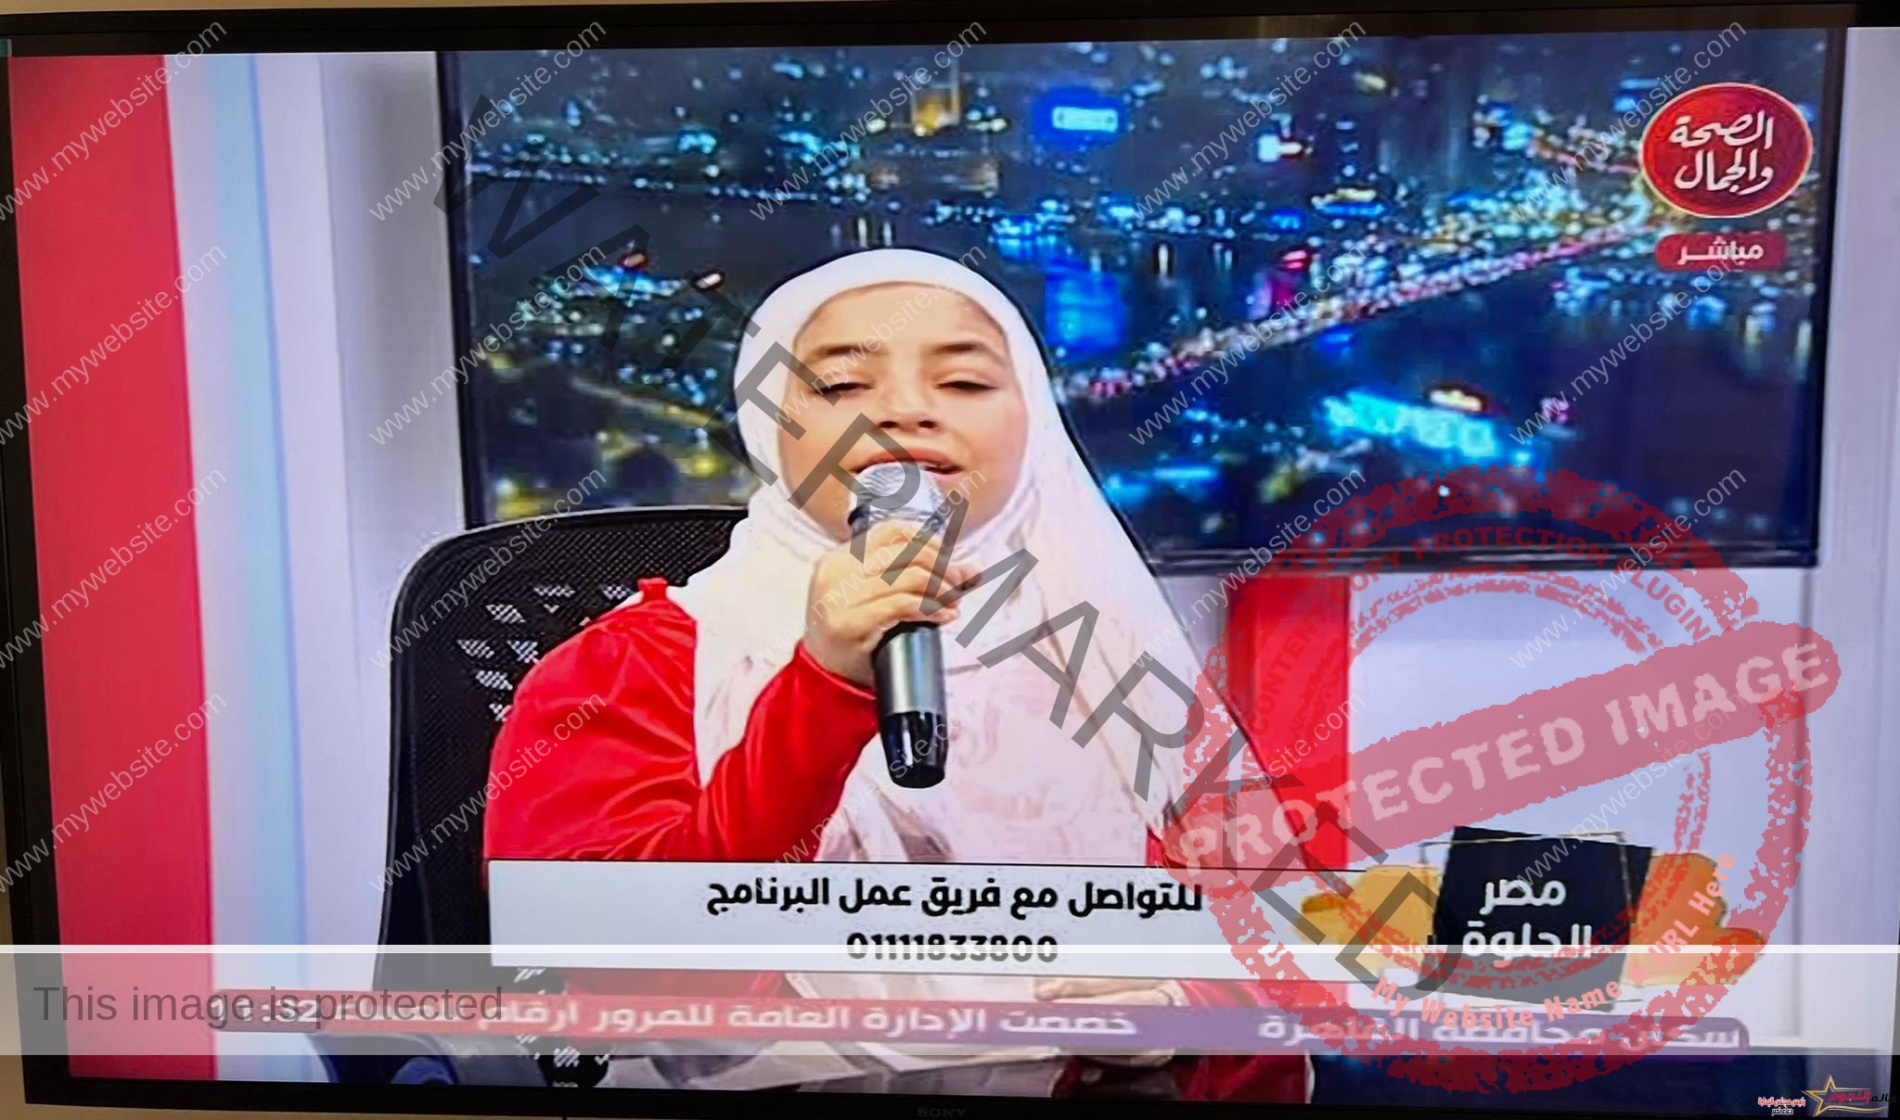 دعاء نصر ومداخلة هاتفية على قناة الصحة والجمال مع الإعلامي محمد العطفي لتشجيع المواهب